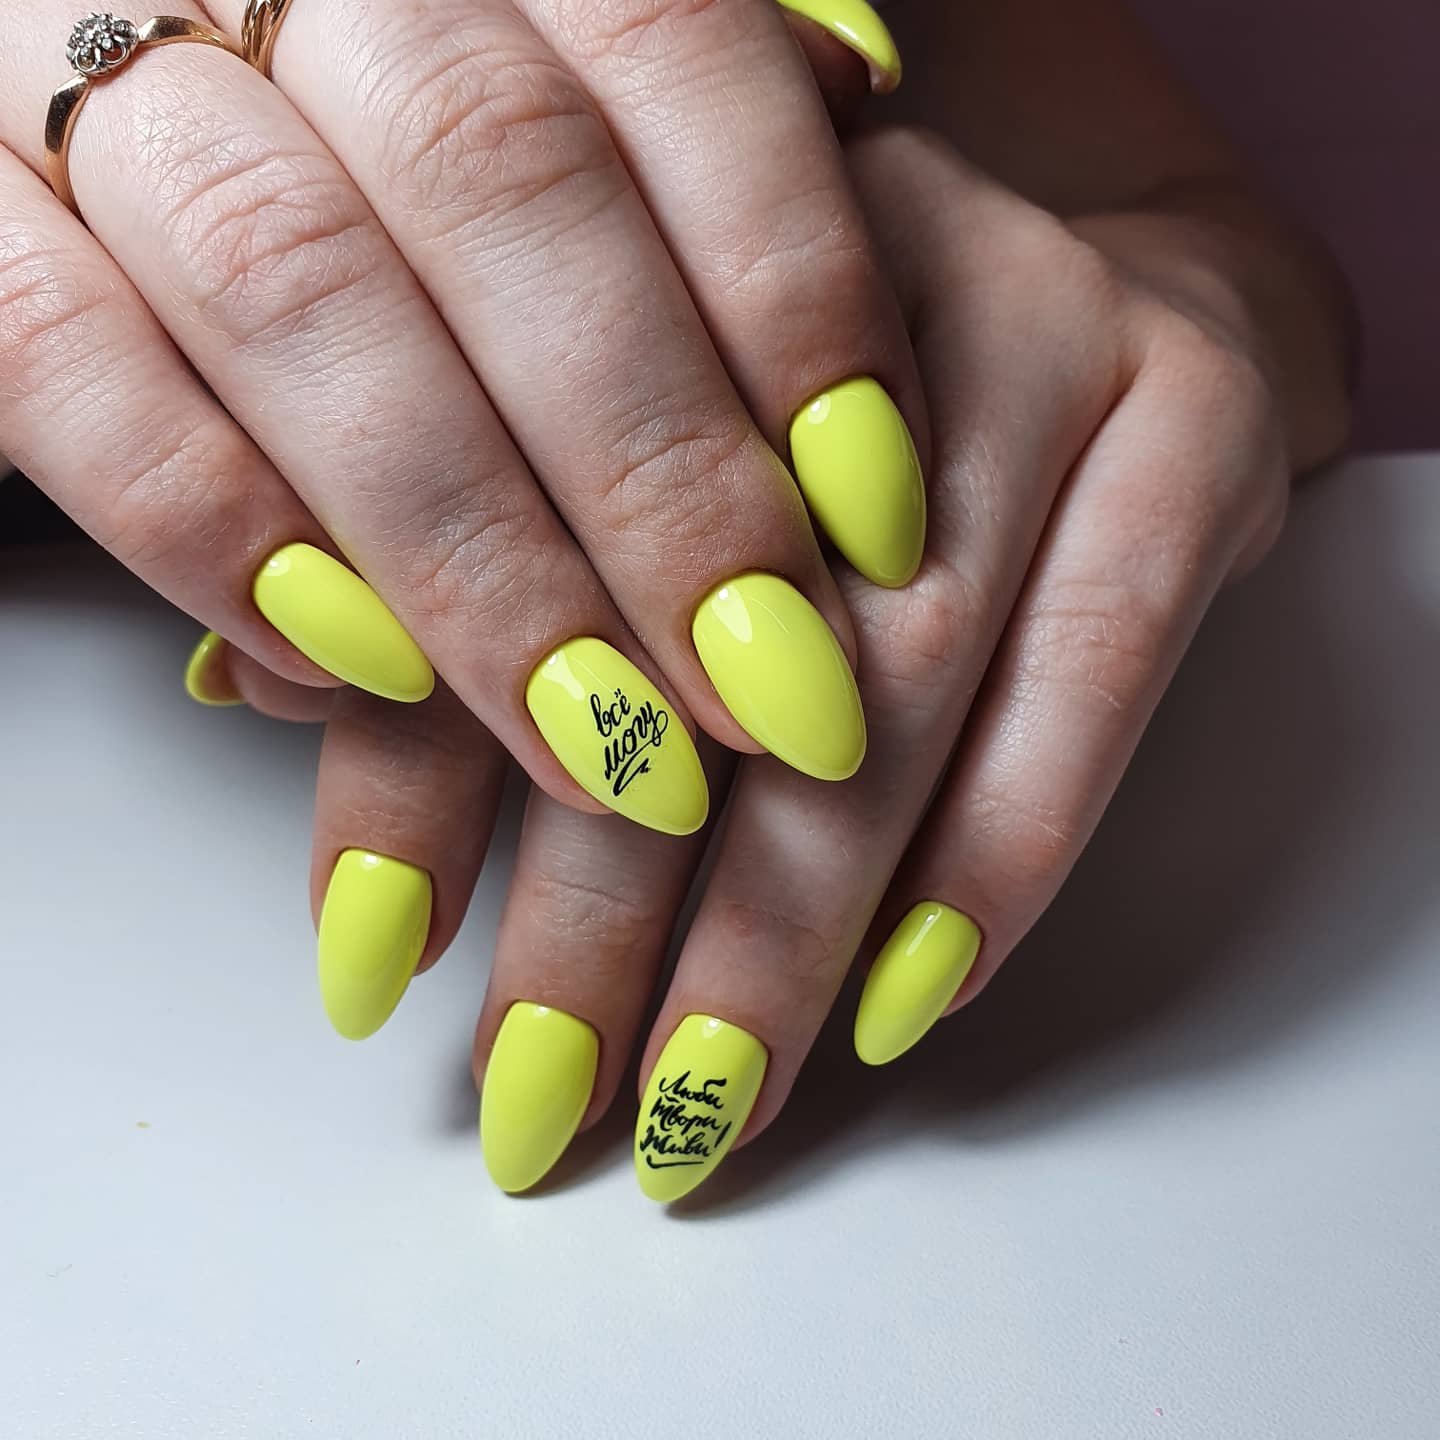 Маникюр с надписями в желтом цвете на короткие ногти.